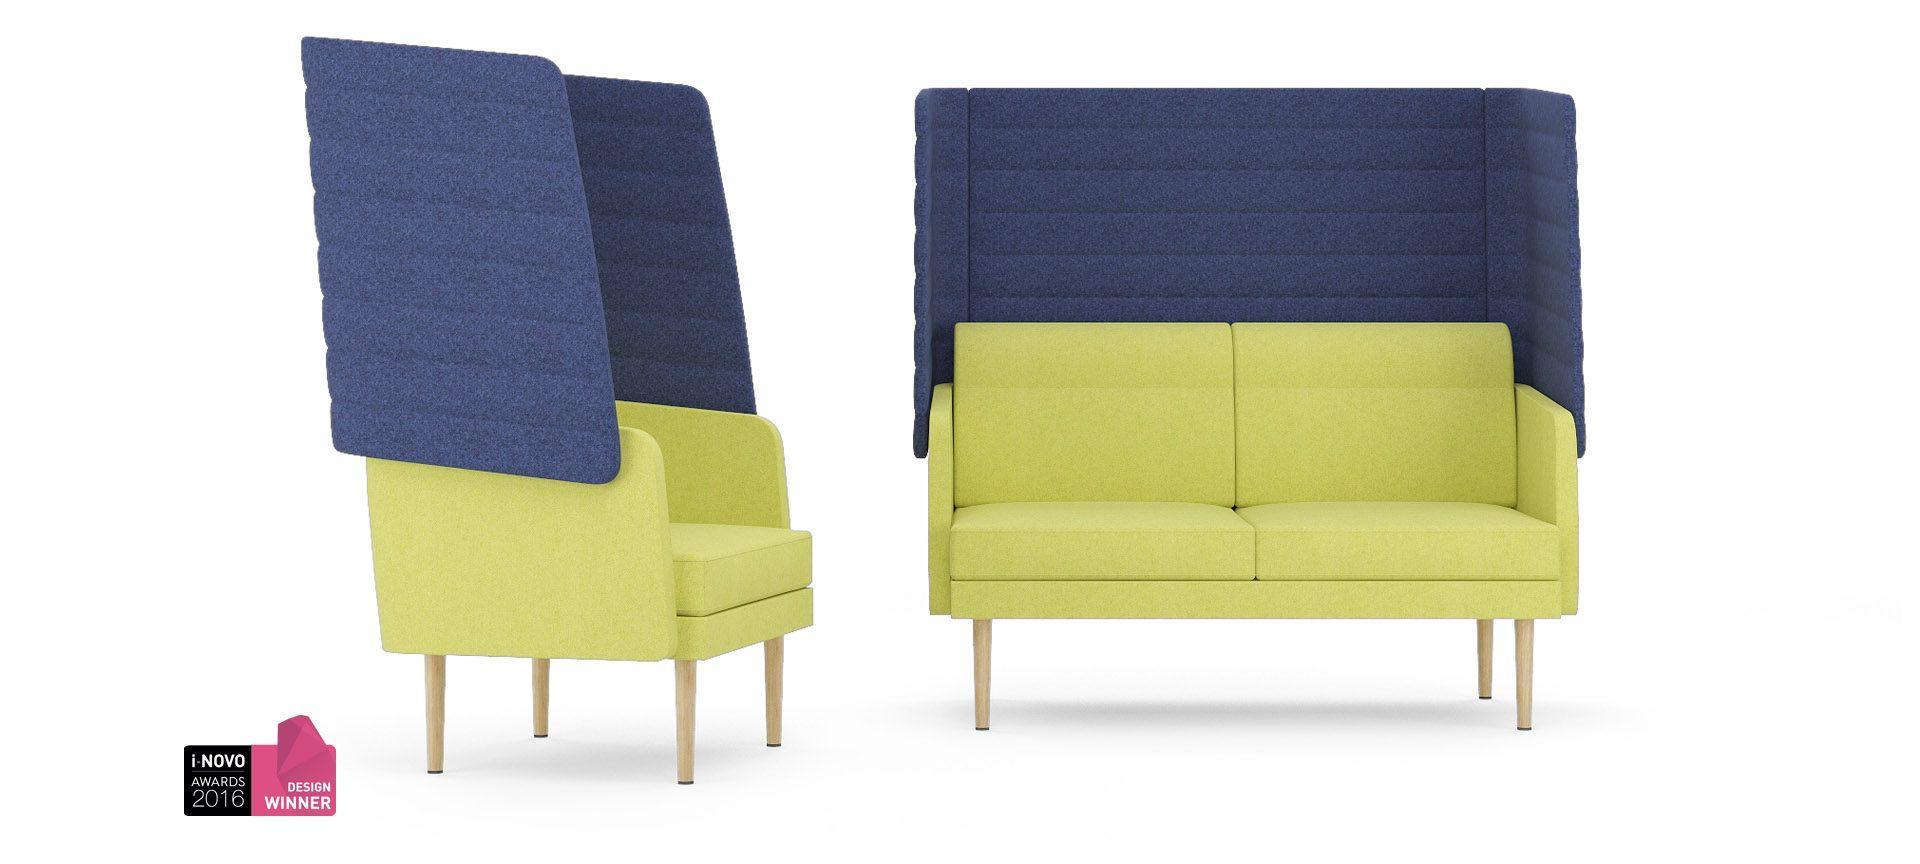 Fotele i sofy Archipelago 3 zdjęcie produktu